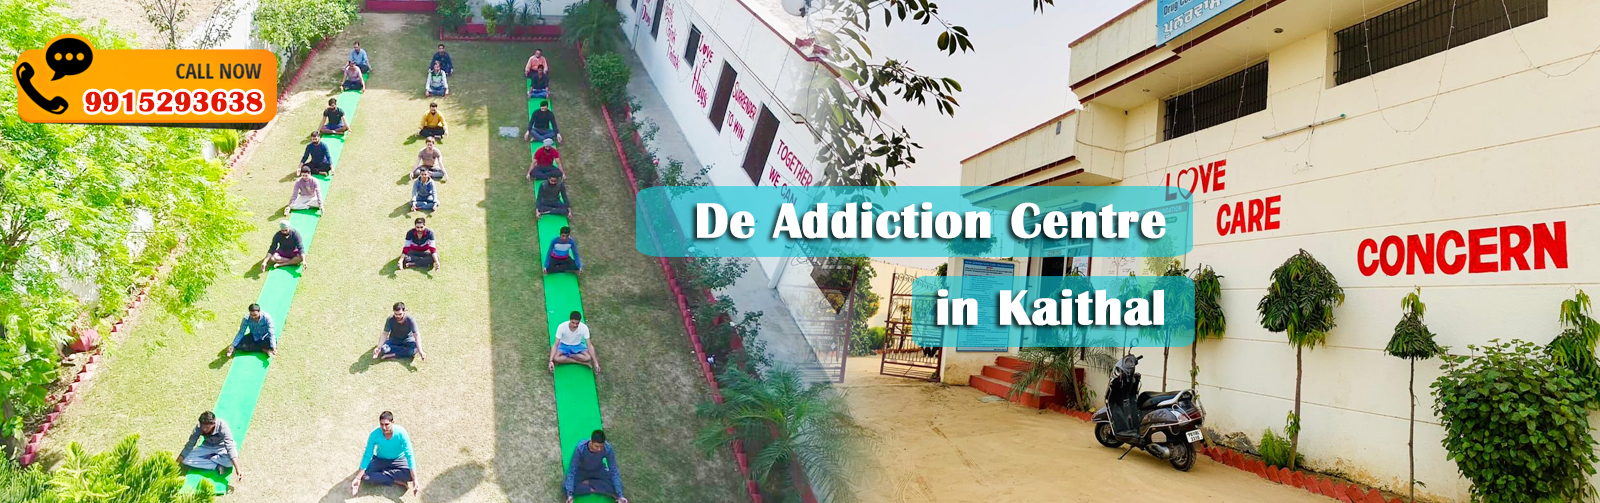 De Addiction Centre in Kaithal